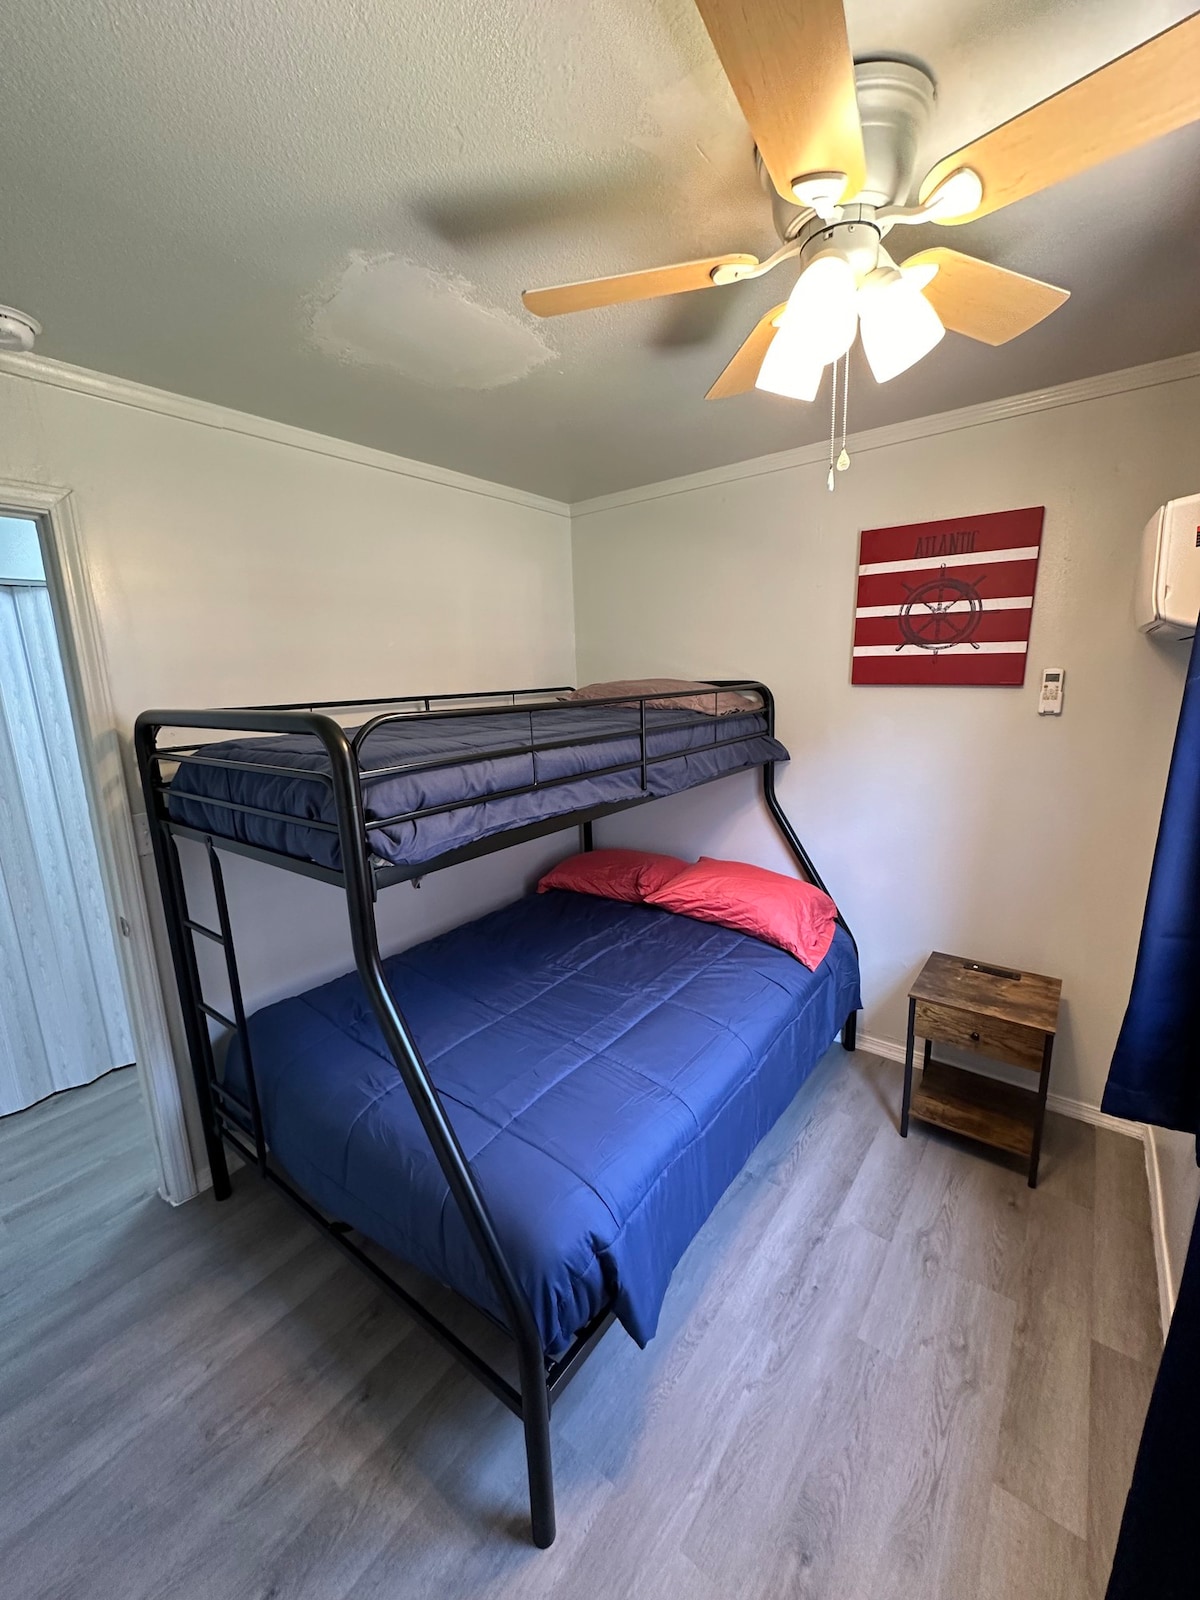 2 Bedroom Duplex H